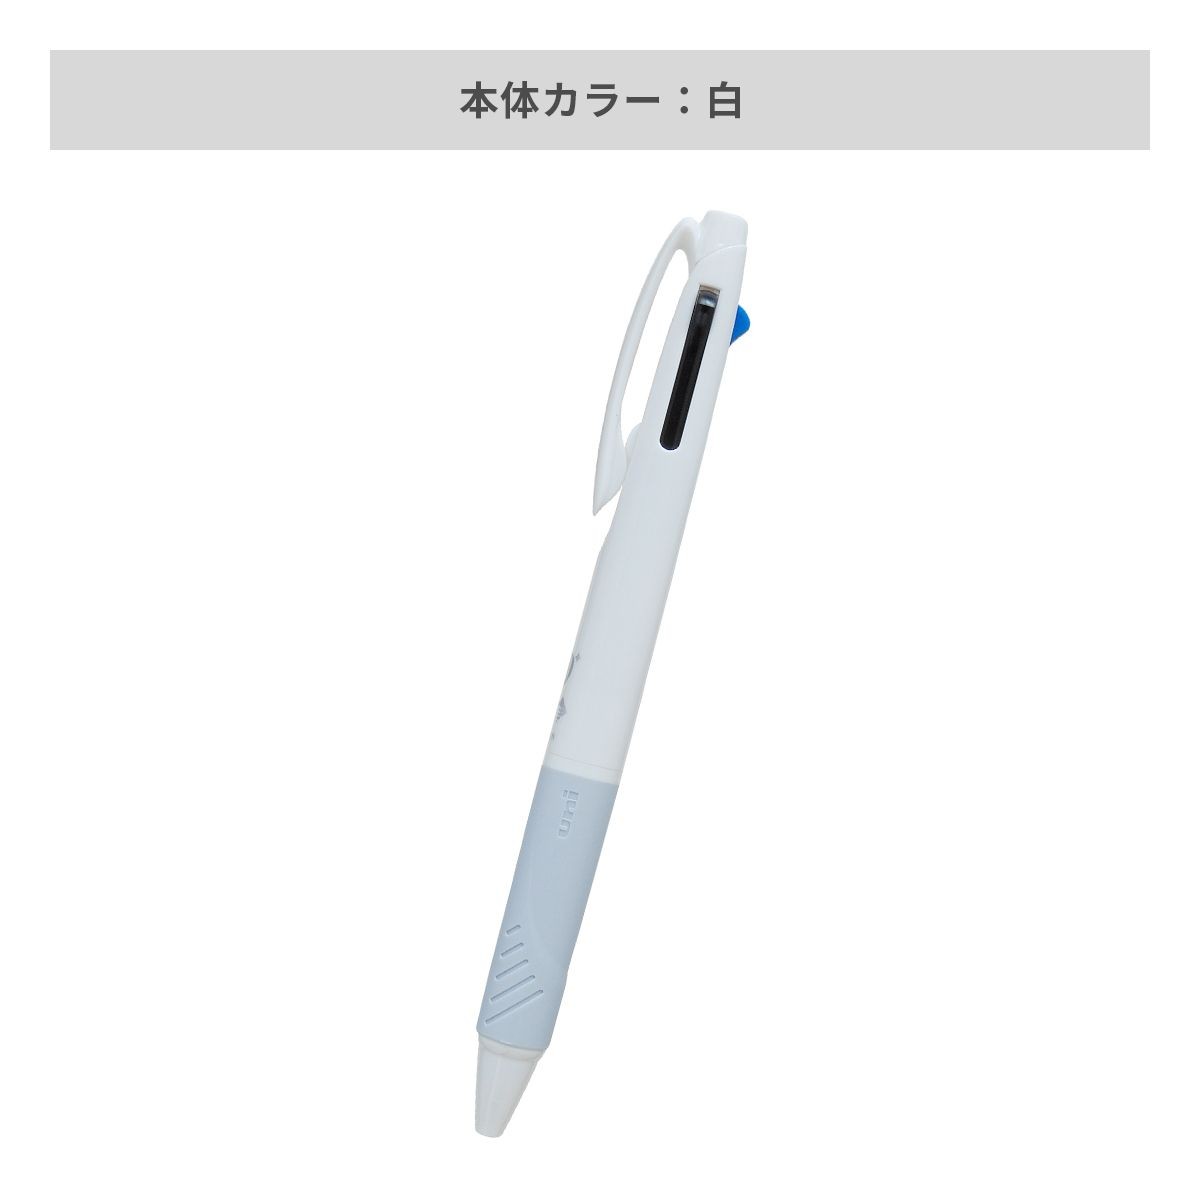 三菱鉛筆 ジェットストリーム 3色ボールペン AGピュア抗菌 白軸 0.7mm【名入れボールペン / インクジェット印刷】 画像3